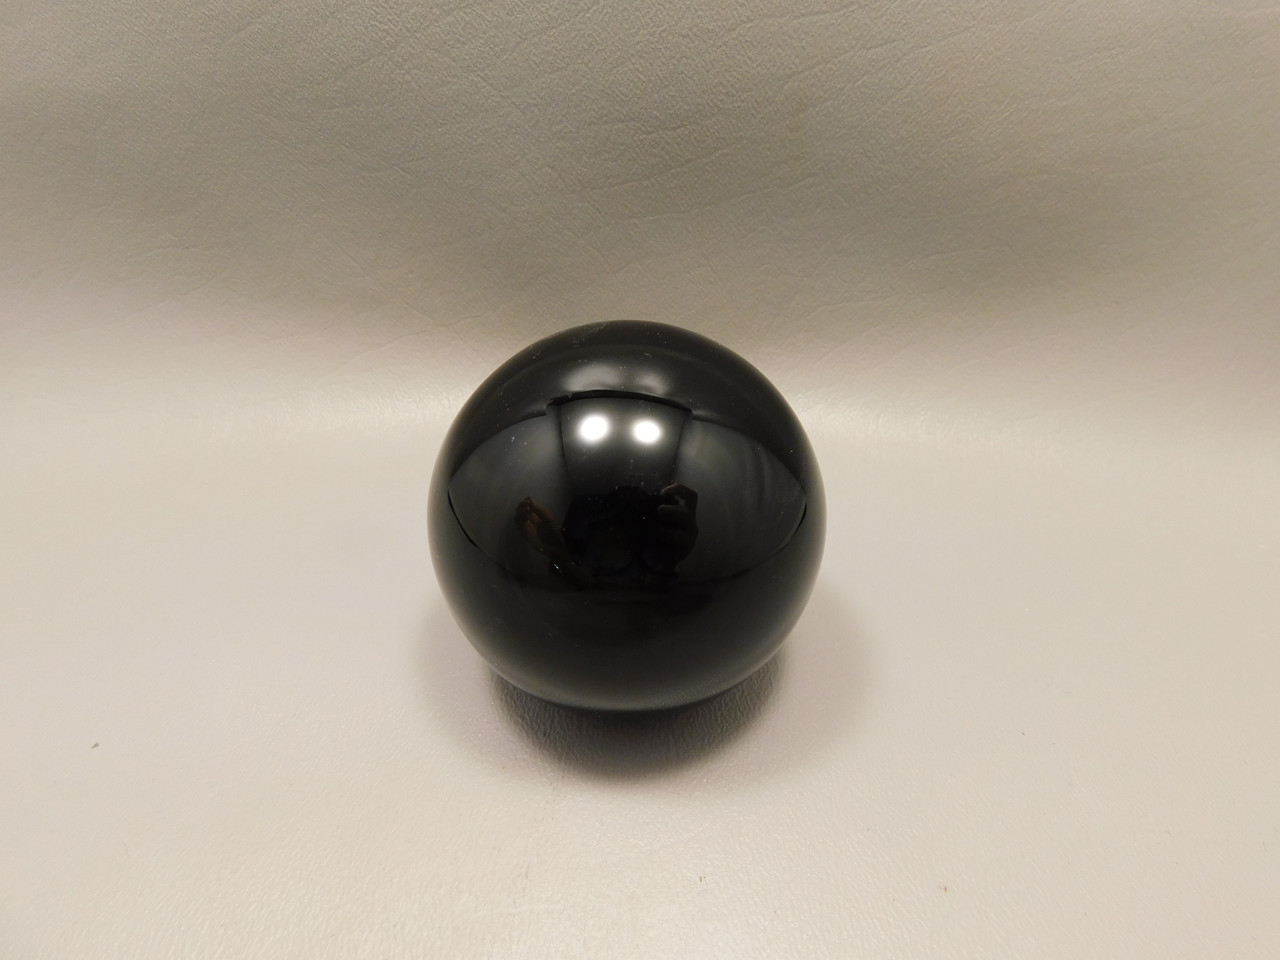 Rainbow Obsidian Stone Sphere Rainbow Obsidian 2.25 inch Healing Stone Black Gemstone #O2